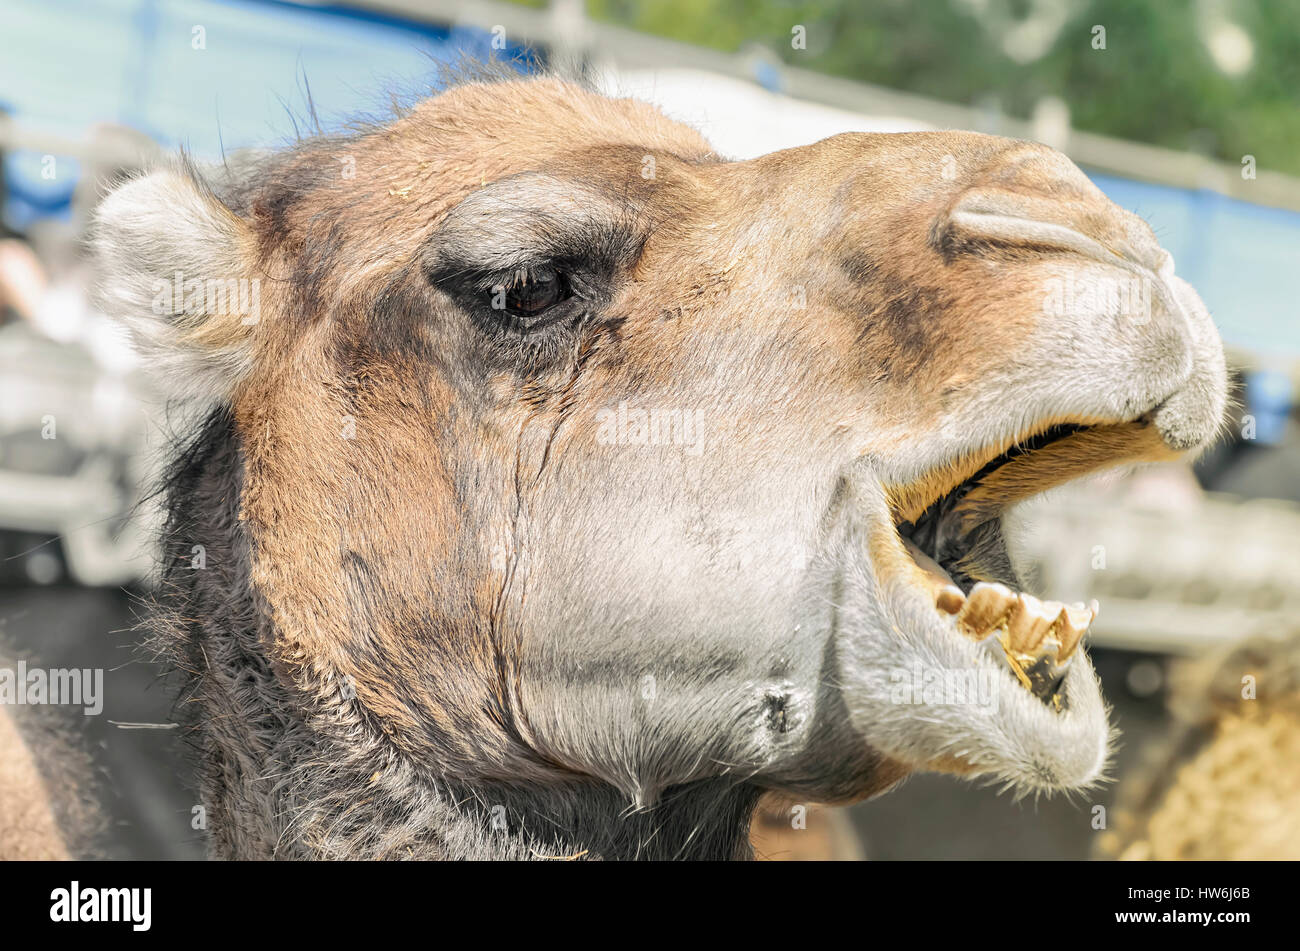 Camelus Dromedarius. Profil von einem Dromedar, auch genannt das arabische Kamel. Moment, wenn er den Mund offen hat und seine Zähne zeigen. Close-up. Stockfoto